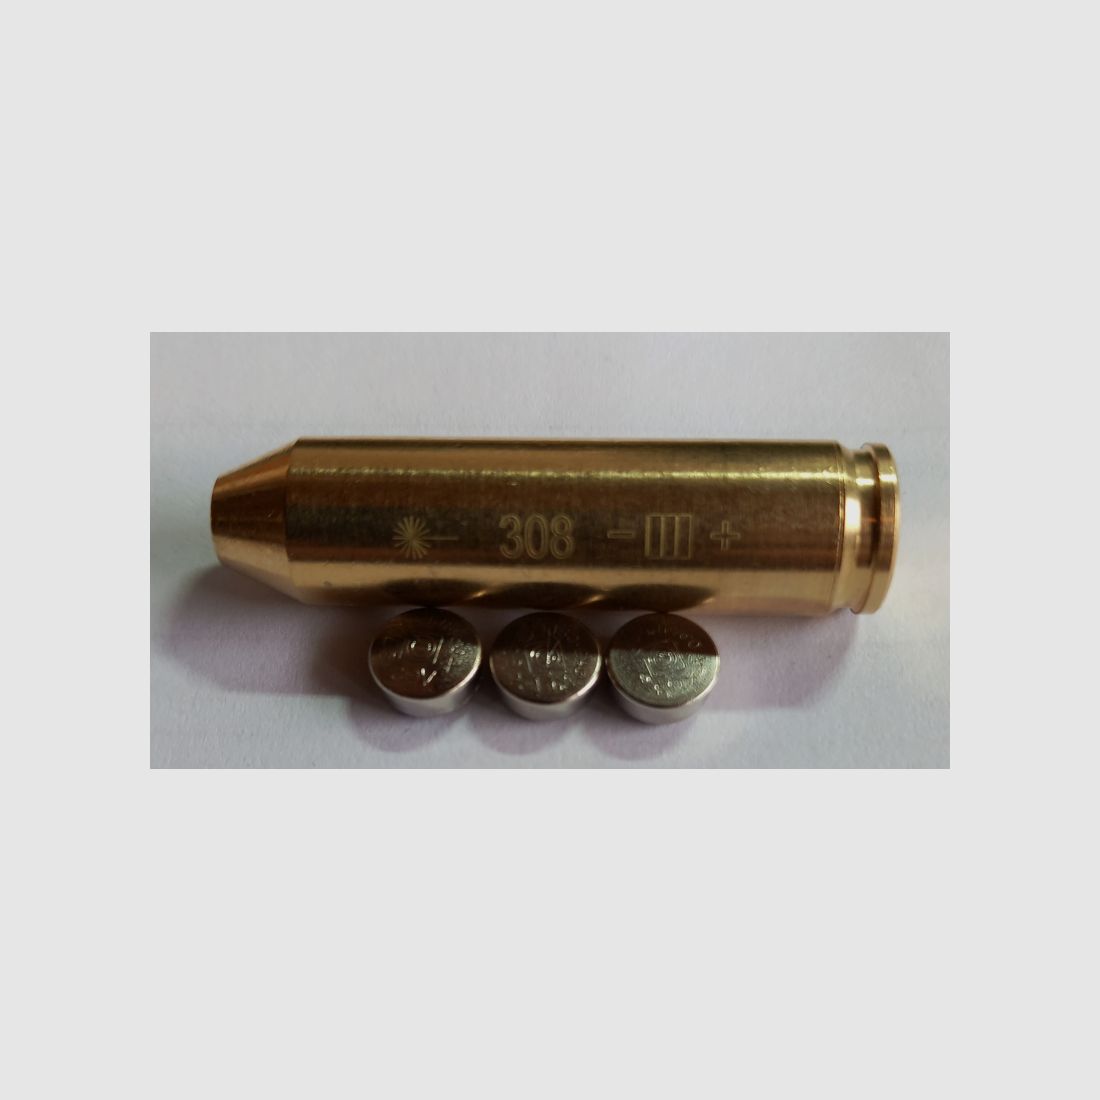 Laserpatrone .308 Winchester, Schussprüfer,mit Batterien